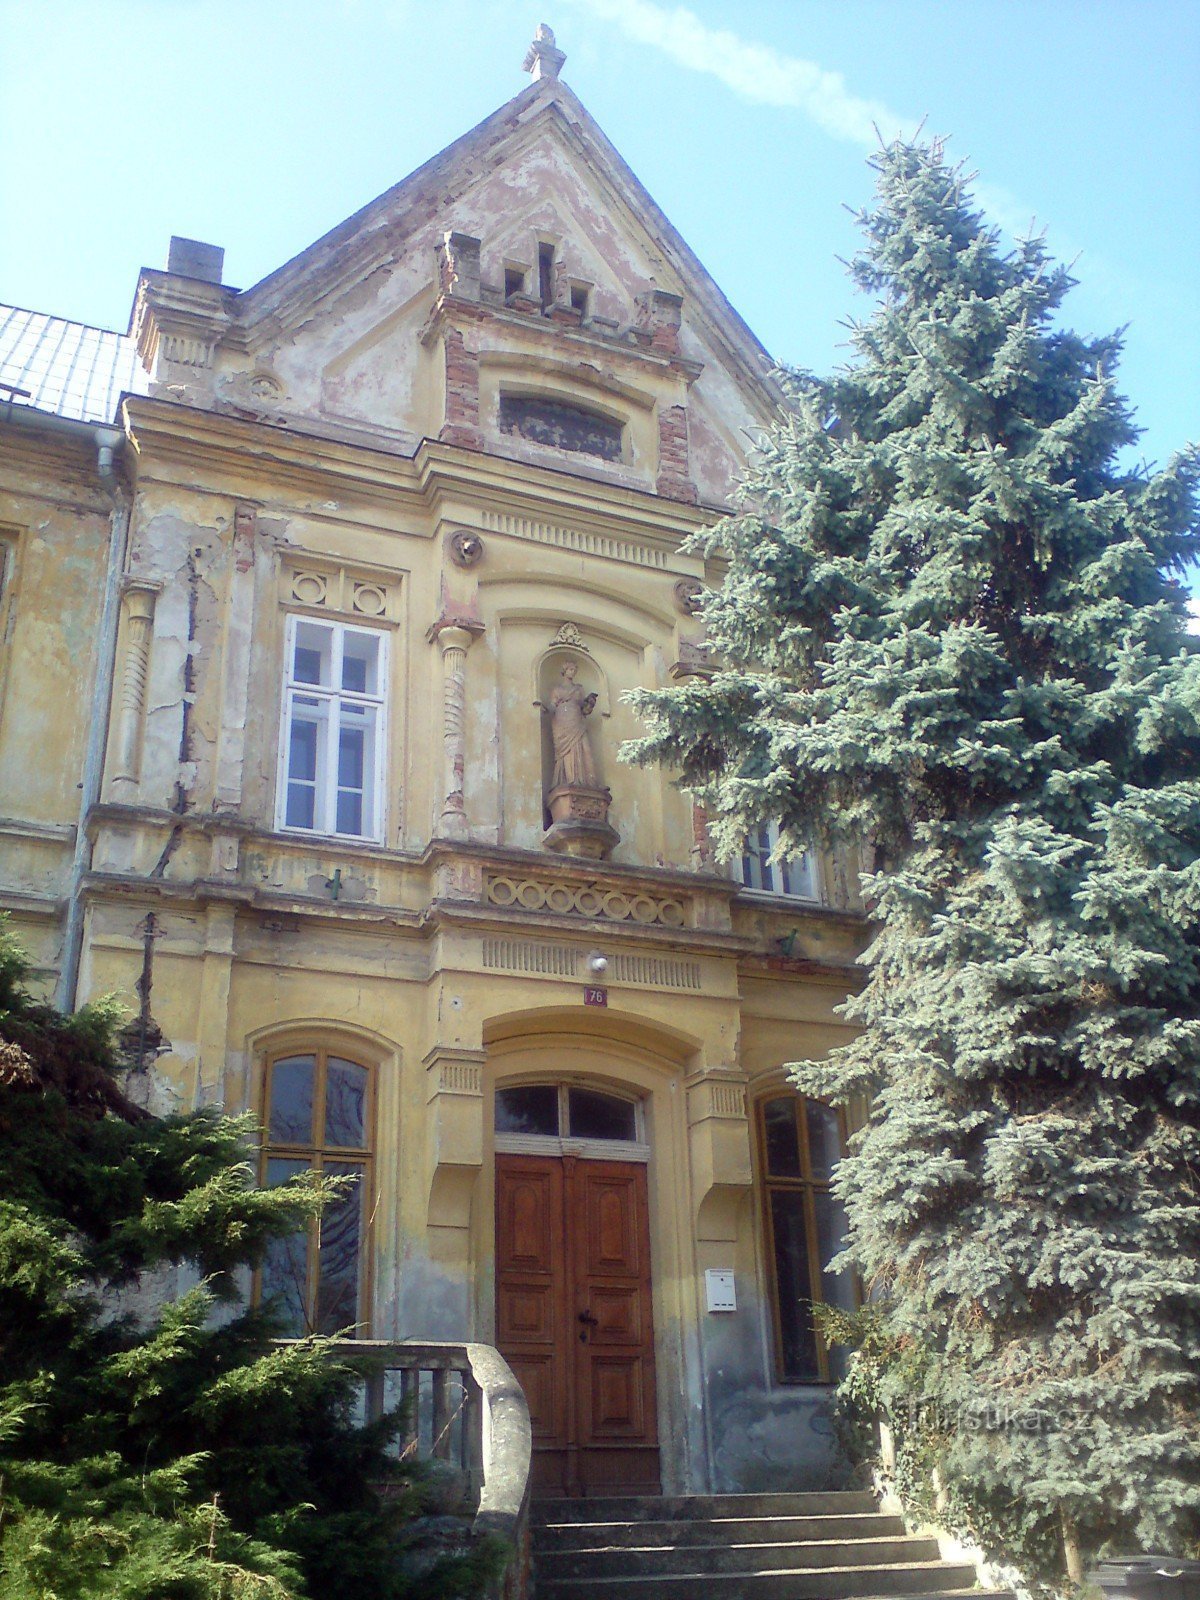 la façade et l'entrée principale du bâtiment de l'école - un sapin argenté à droite orne l'escalier, non